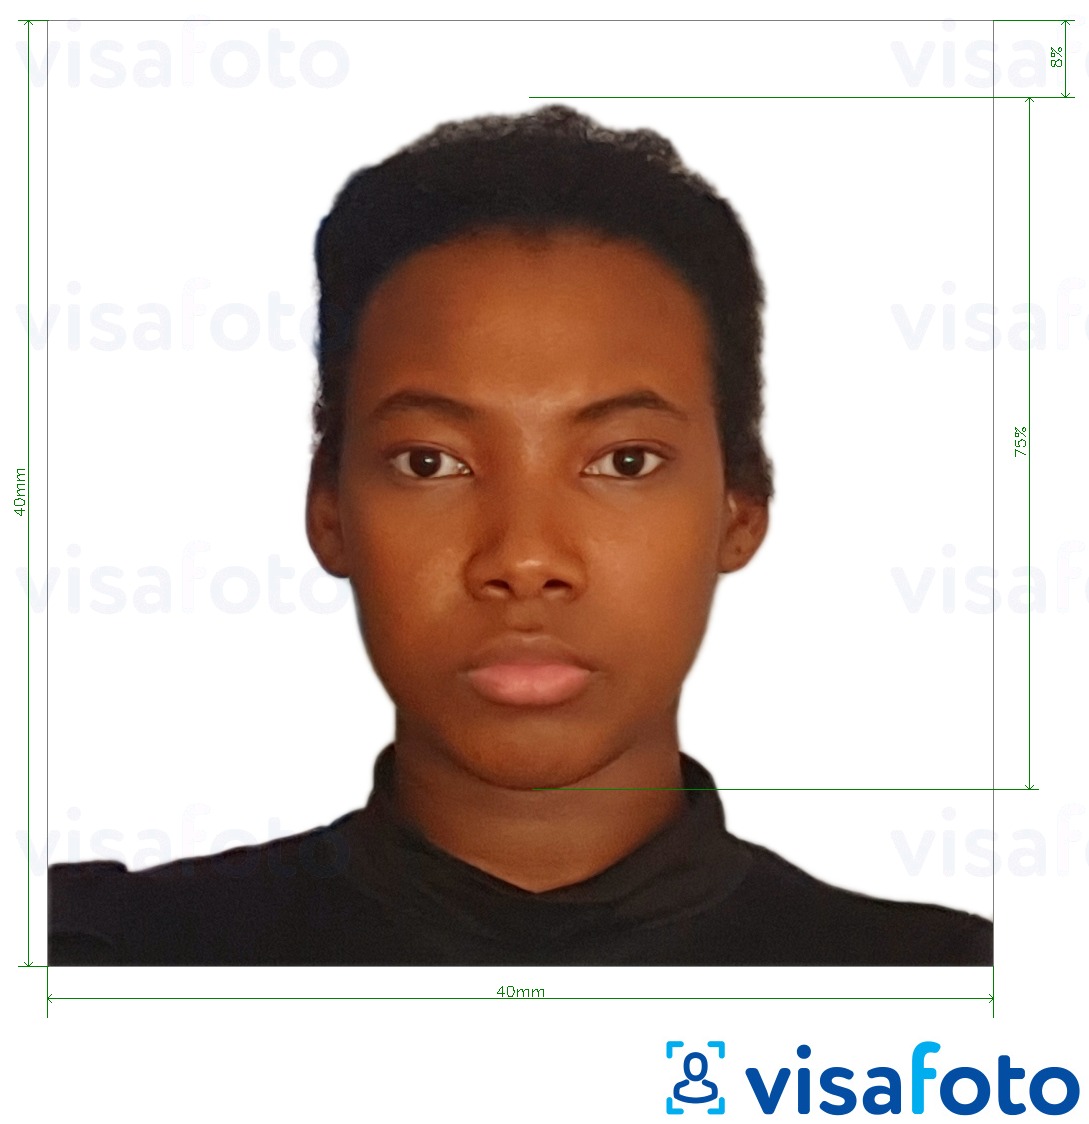 Παράδειγμα φωτογραφίας για Καμερούν visa 4x4 cm (40x40 mm) με ακριβείς προδιαγραφές μεγέθους